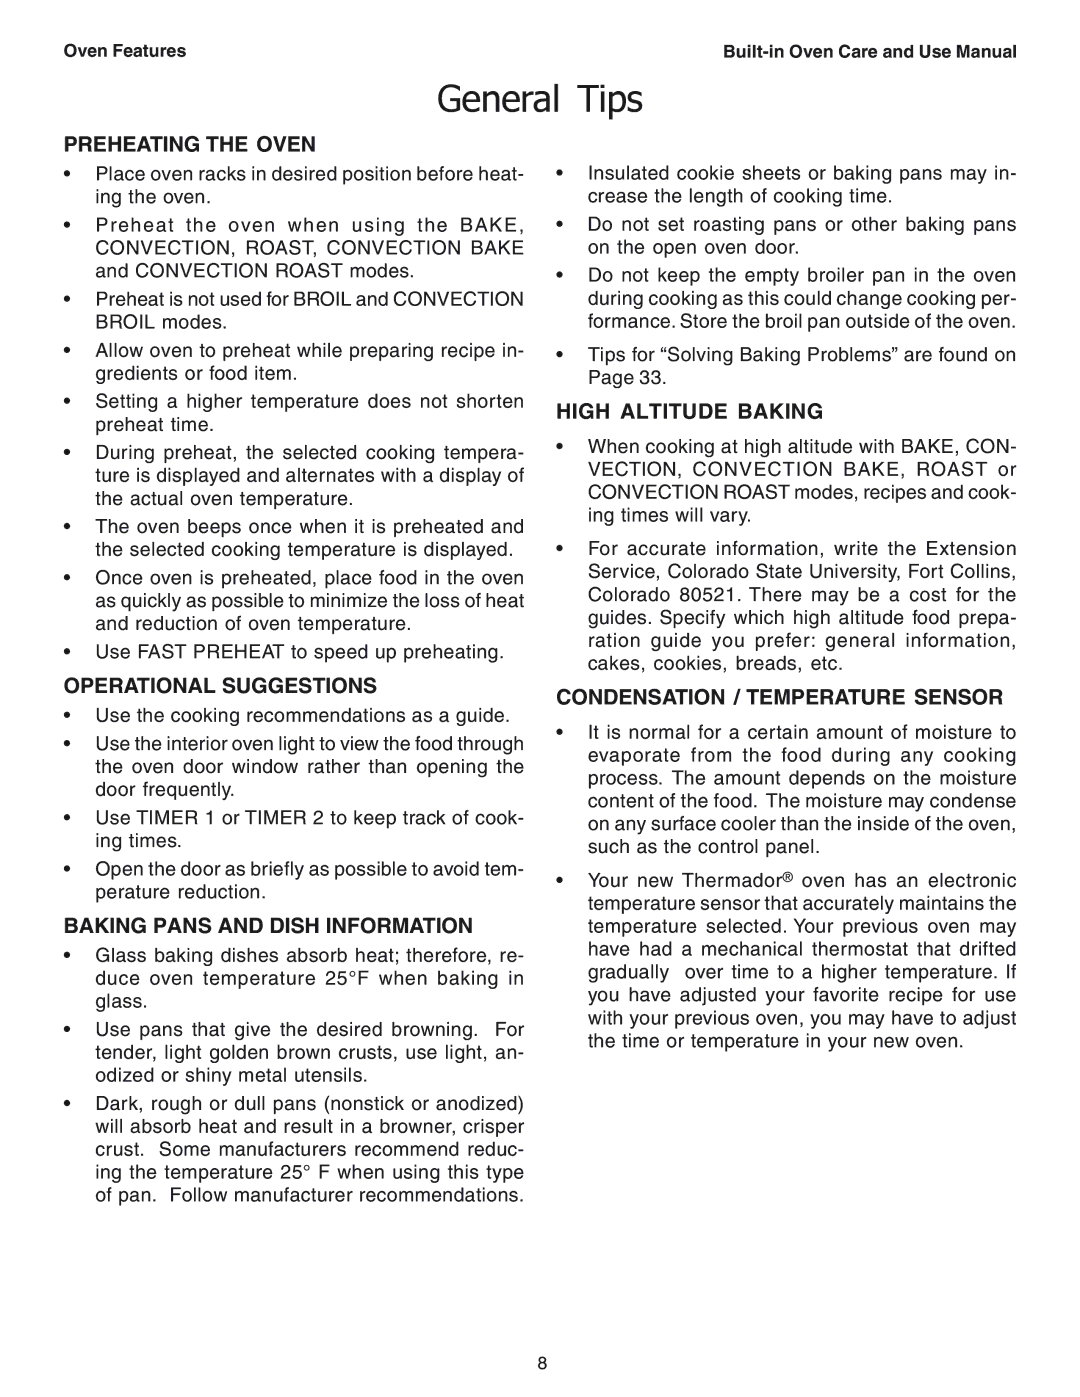 Thermador SEC271 manual General Tips 